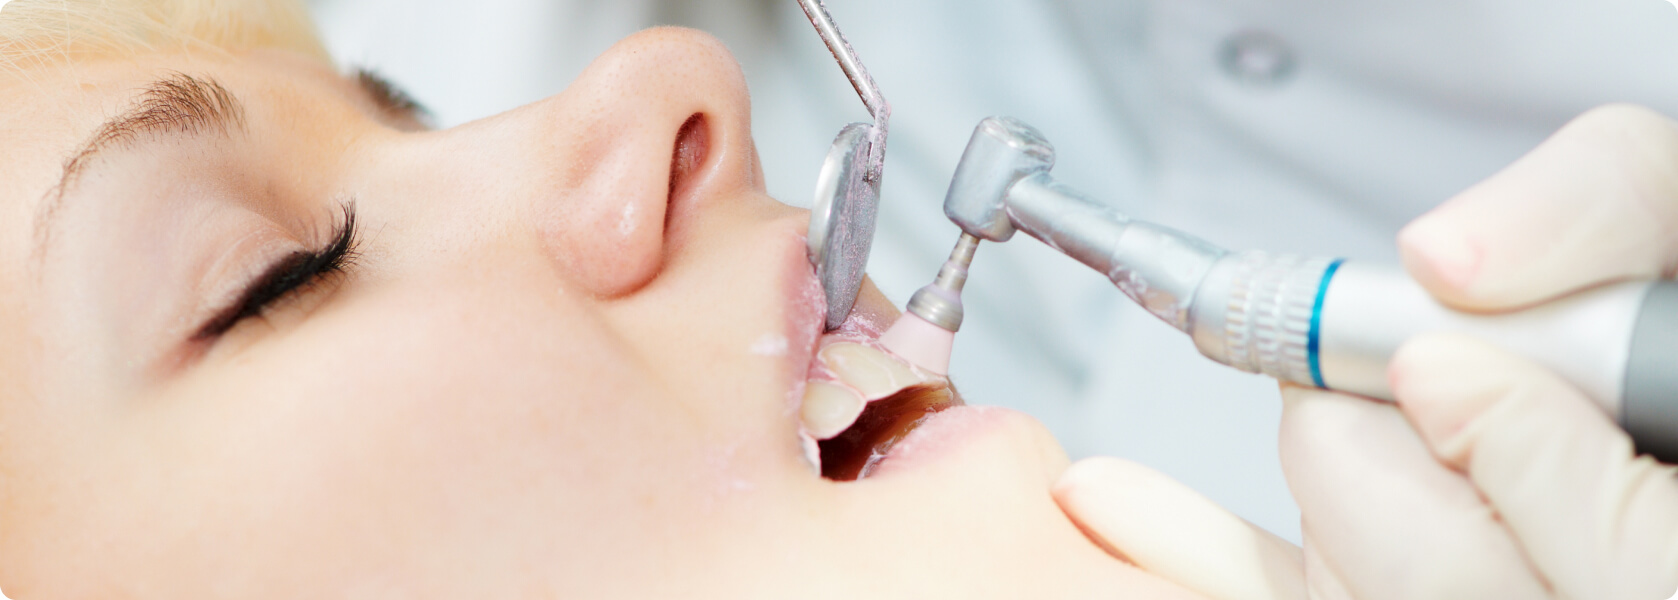 Professionelle Zahnreinigung - Was ist eine professionelle Zahnreinigung?